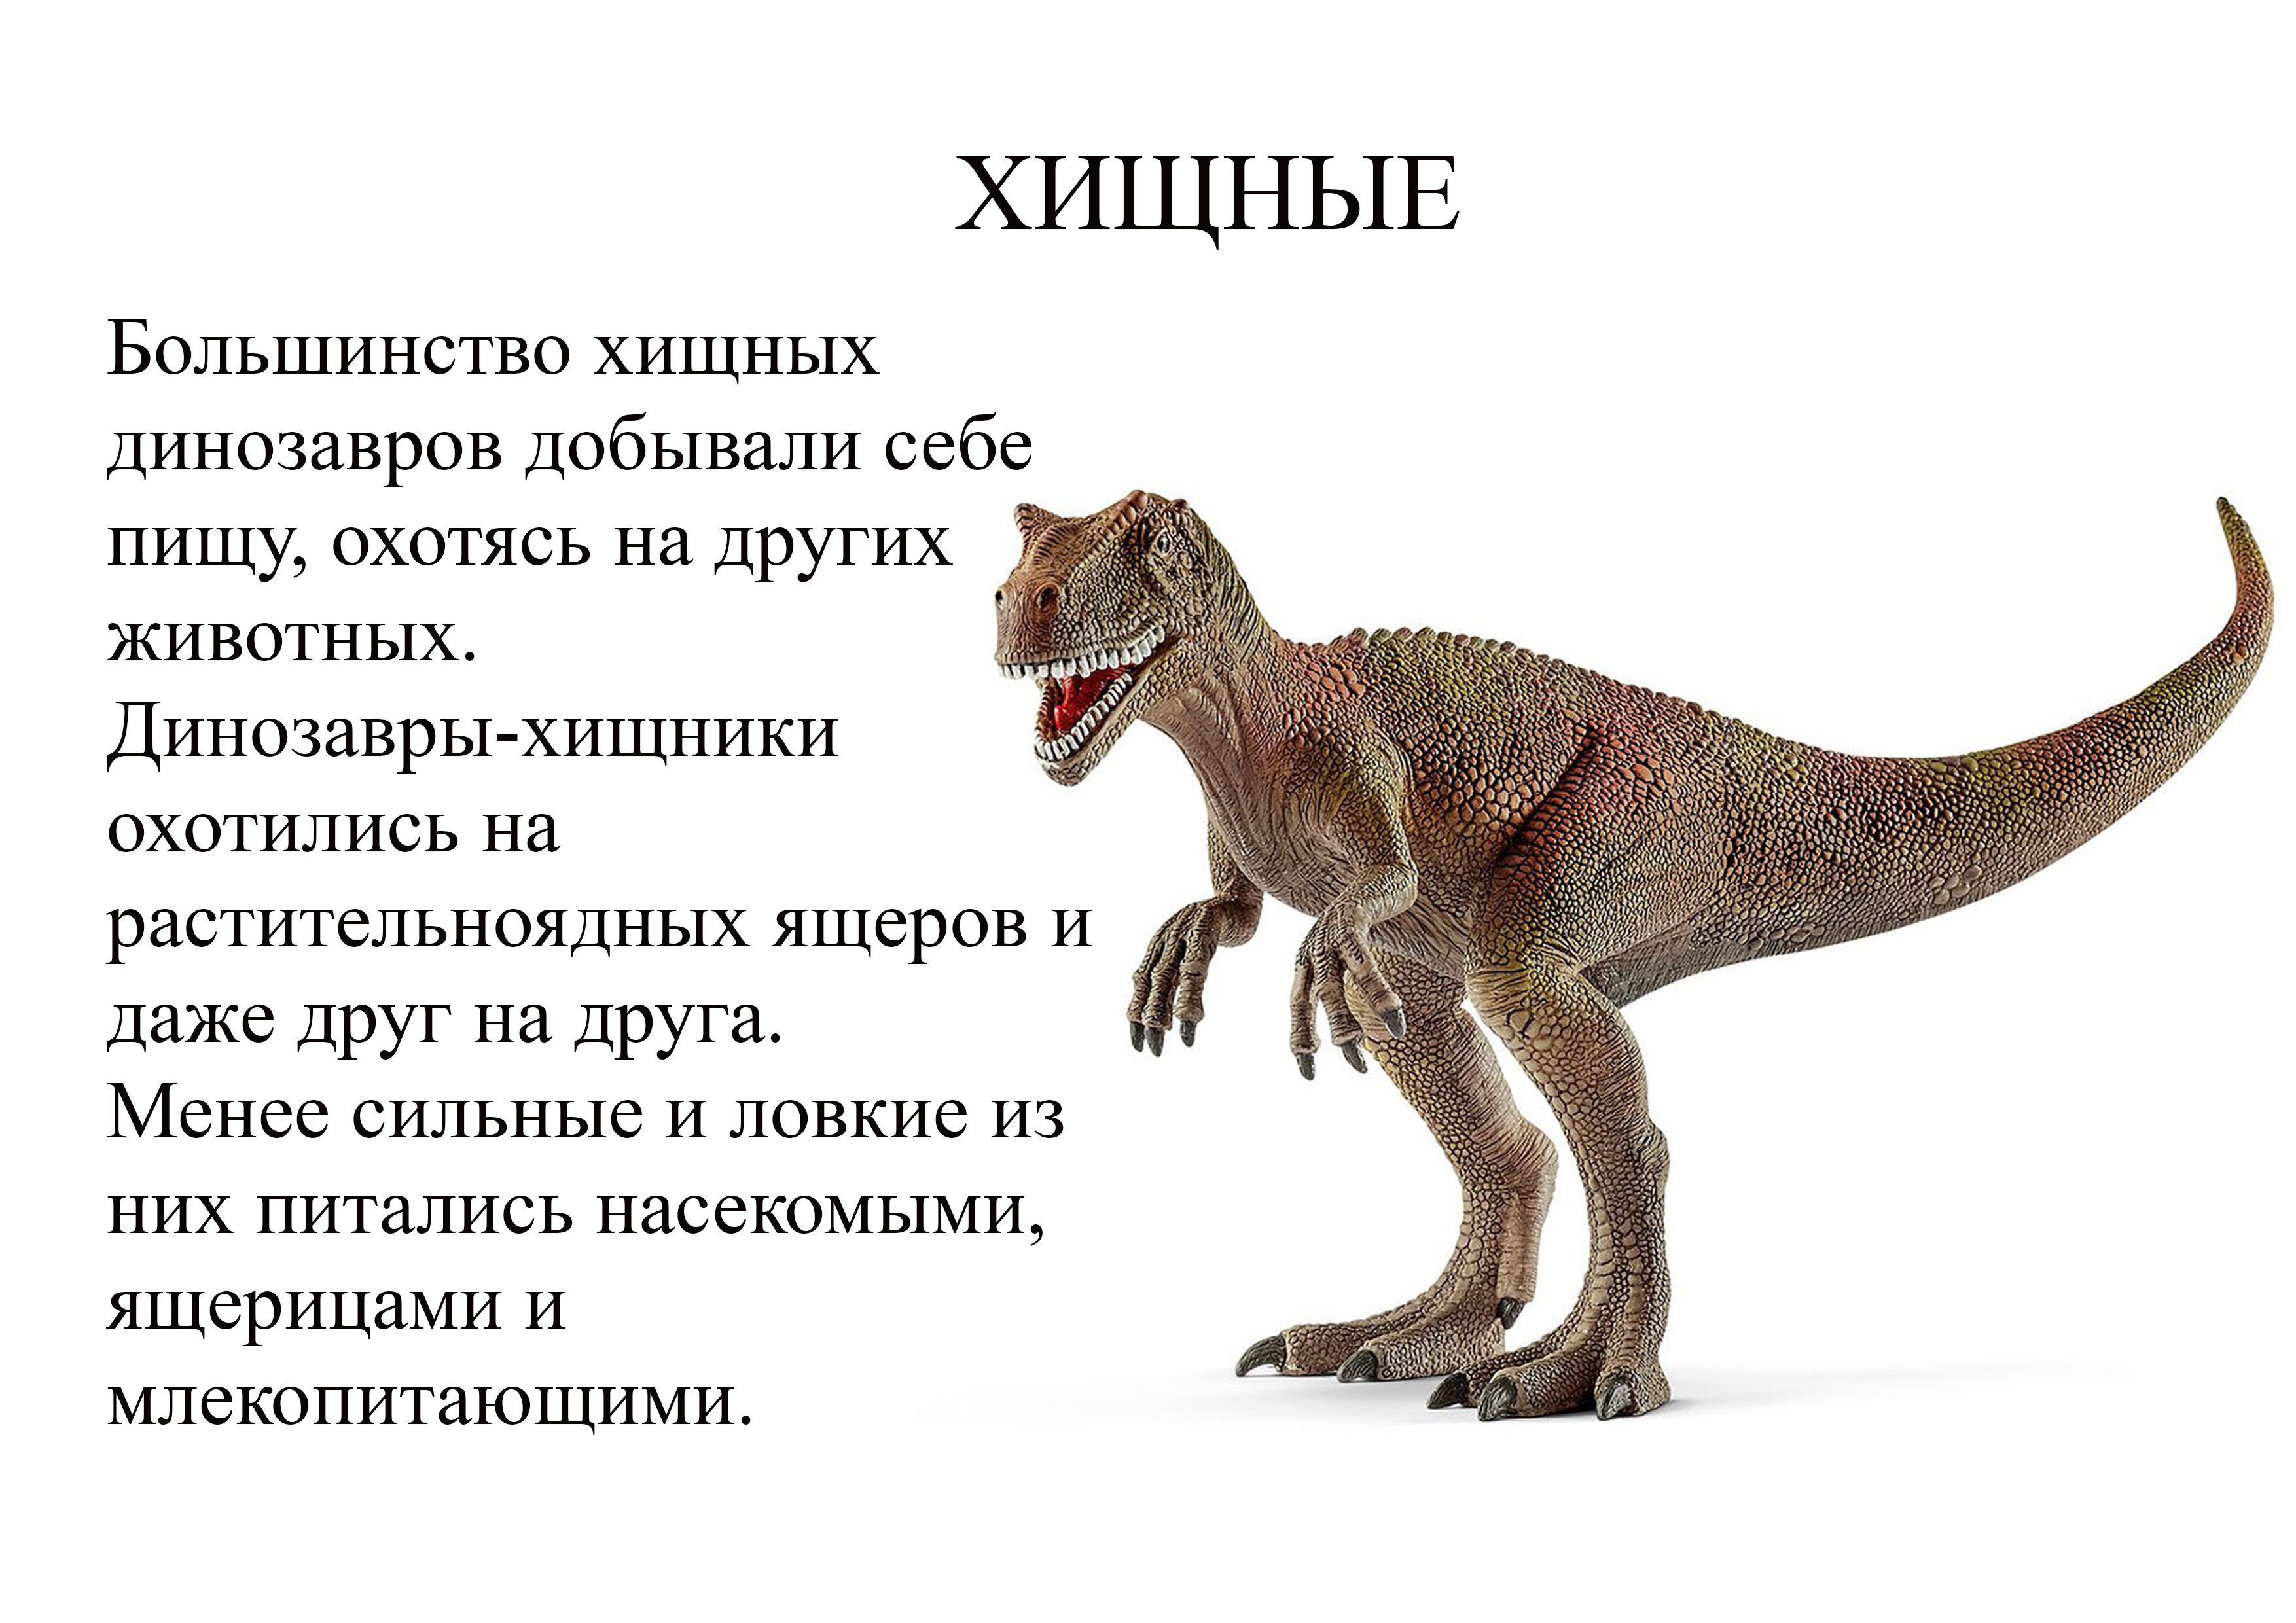 найти картинку где написано названия динозавра